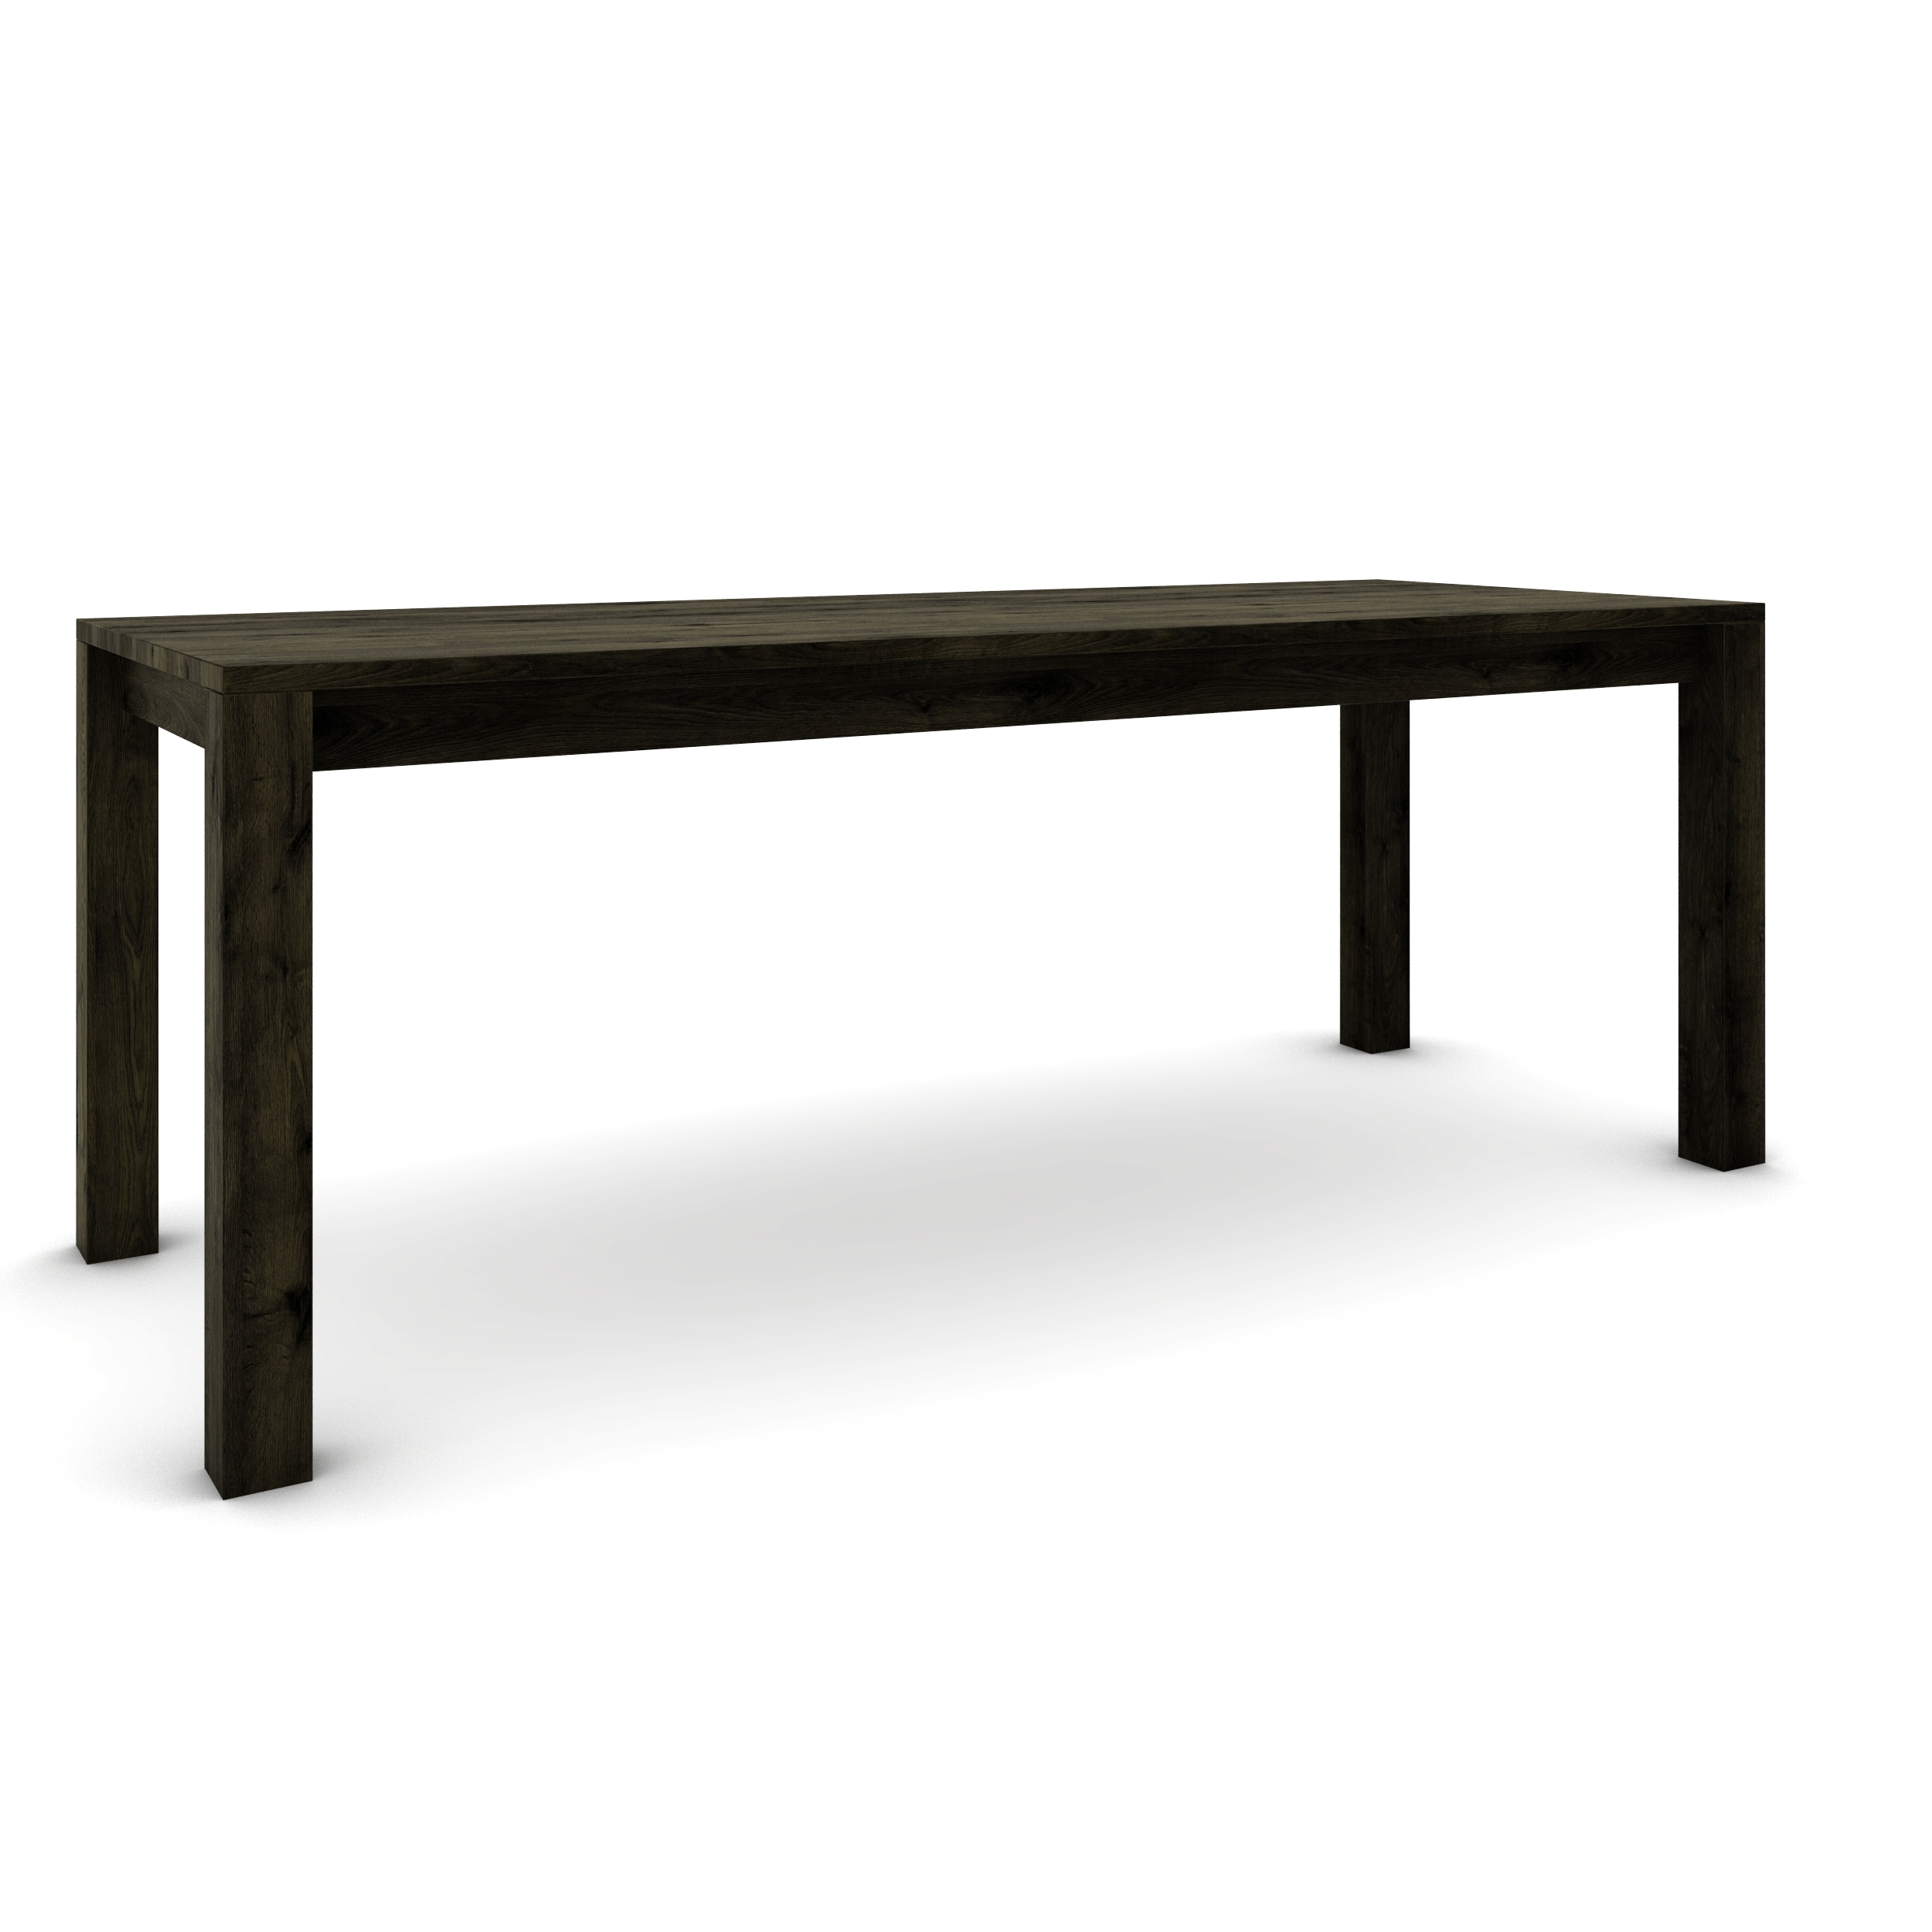 Dubový stôl 200 x 80 cm , čierny so strieborným efektom